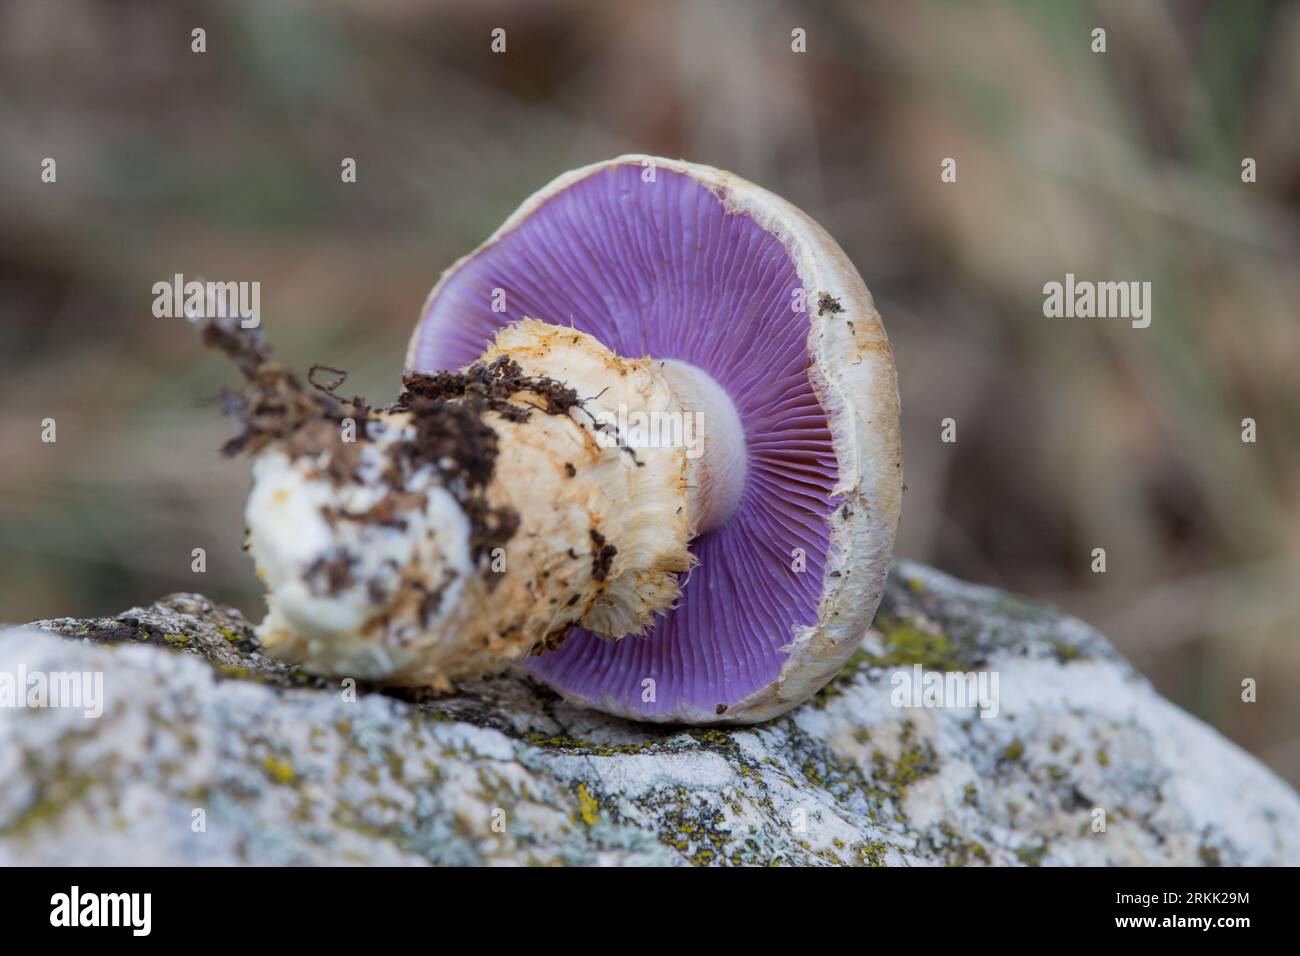 Cortinarius varius mushroom with a lilac or intense violet color in its blades found in the area of San Antonio de Alcoy, Spain Stock Photo